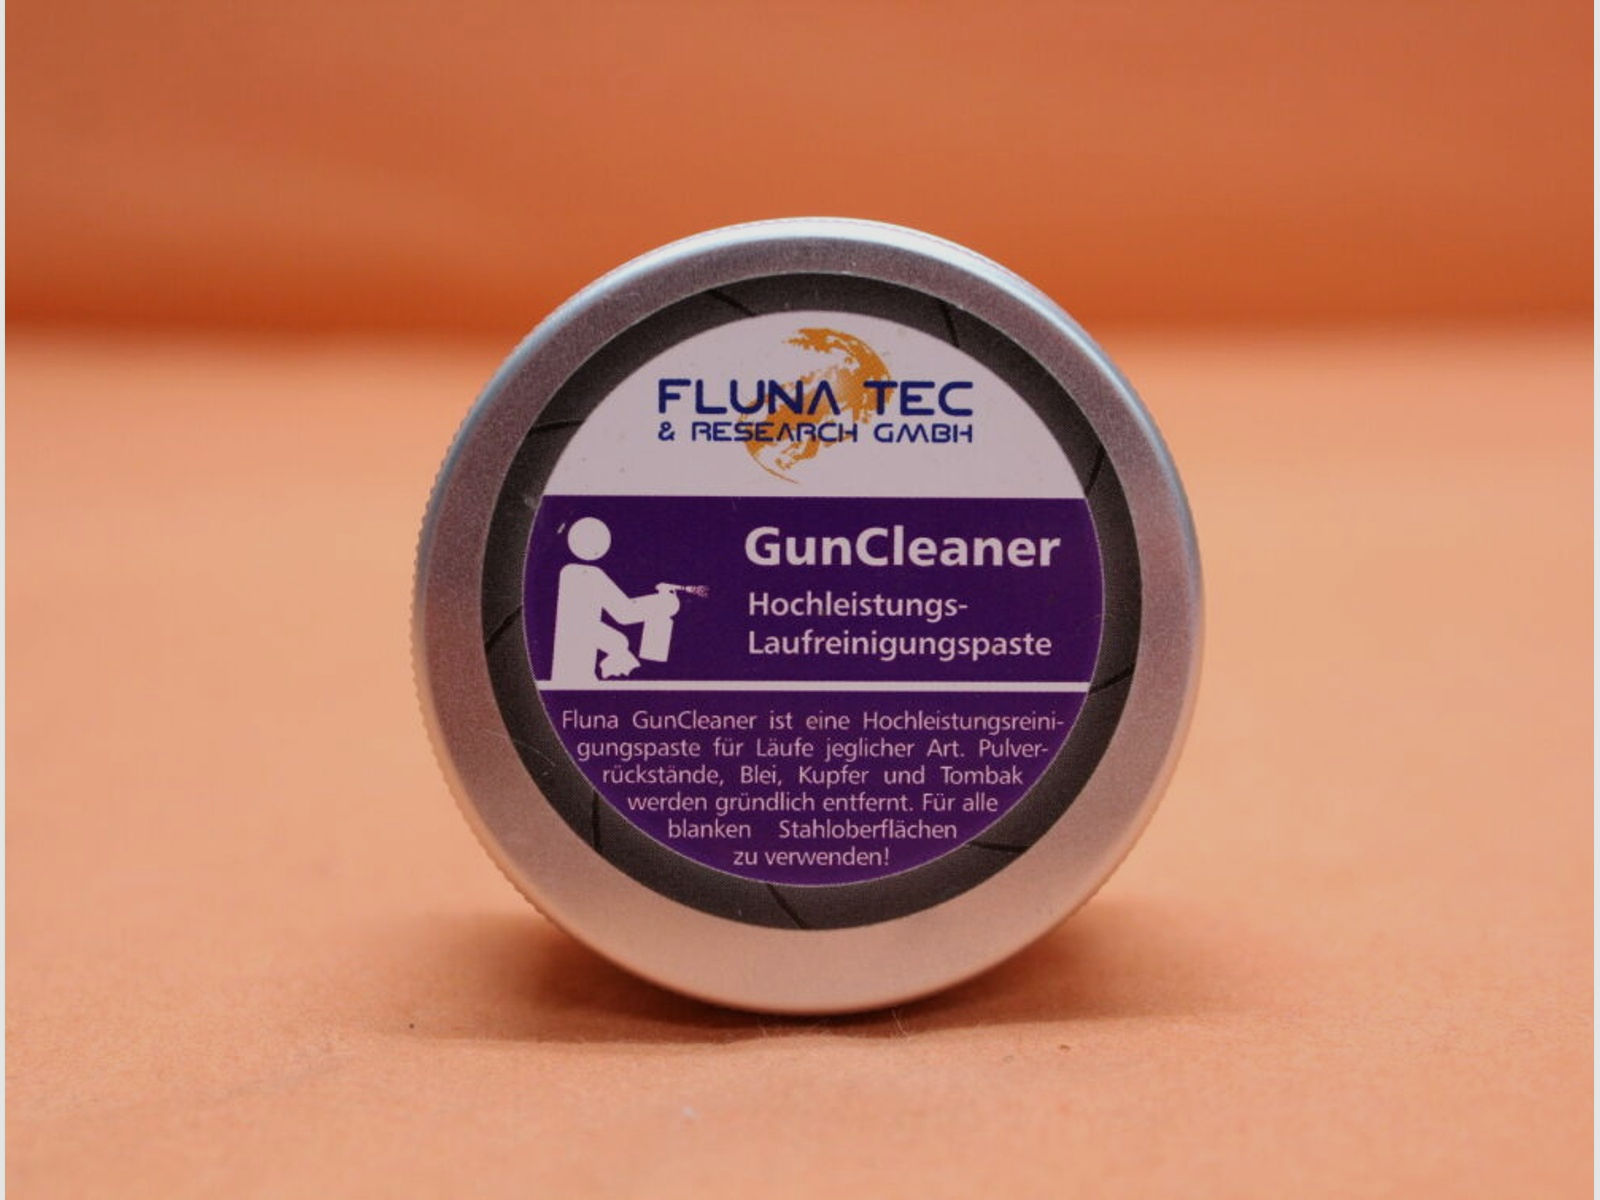 Fluna Tec	 Fluna Tec Gun Cleaner (50ml Dose) Laufreinigungspaste